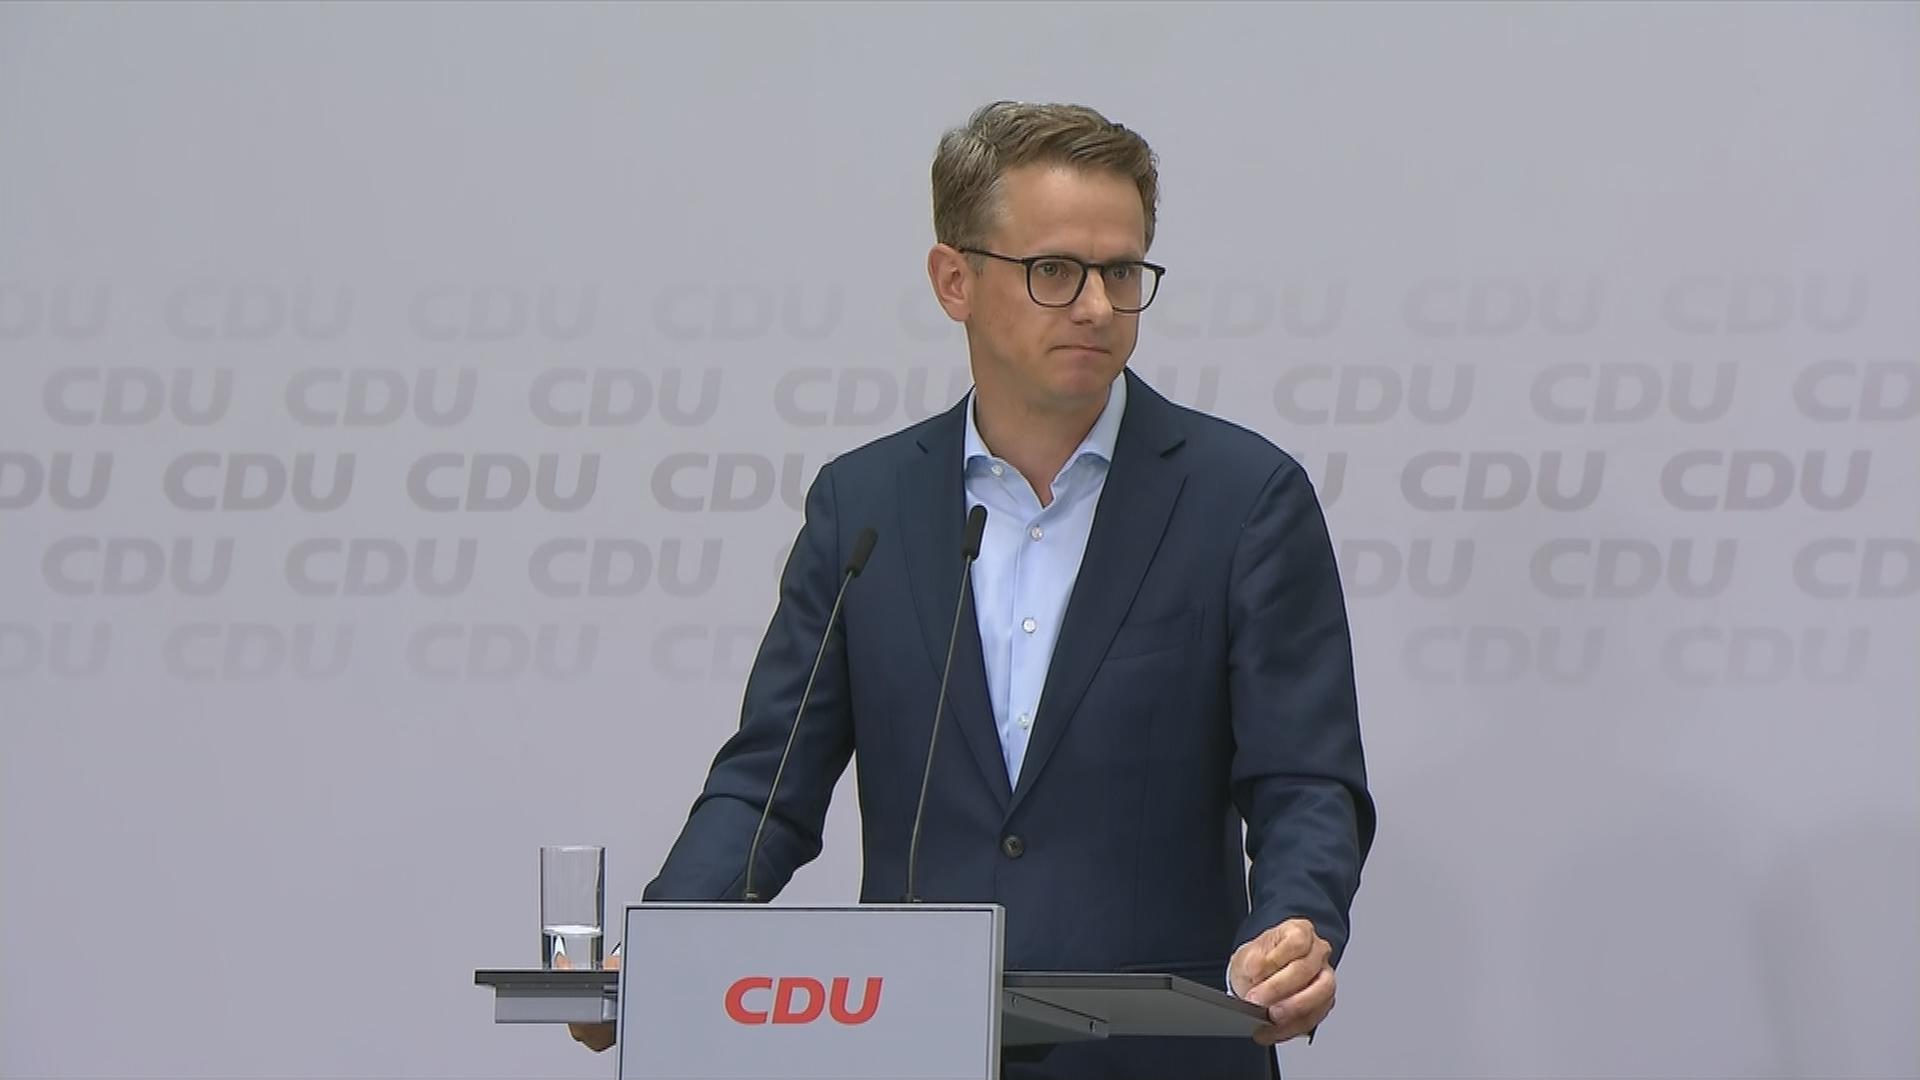 Auf dem Bild ist der neue Generalsekretär der CDU zu sehen.